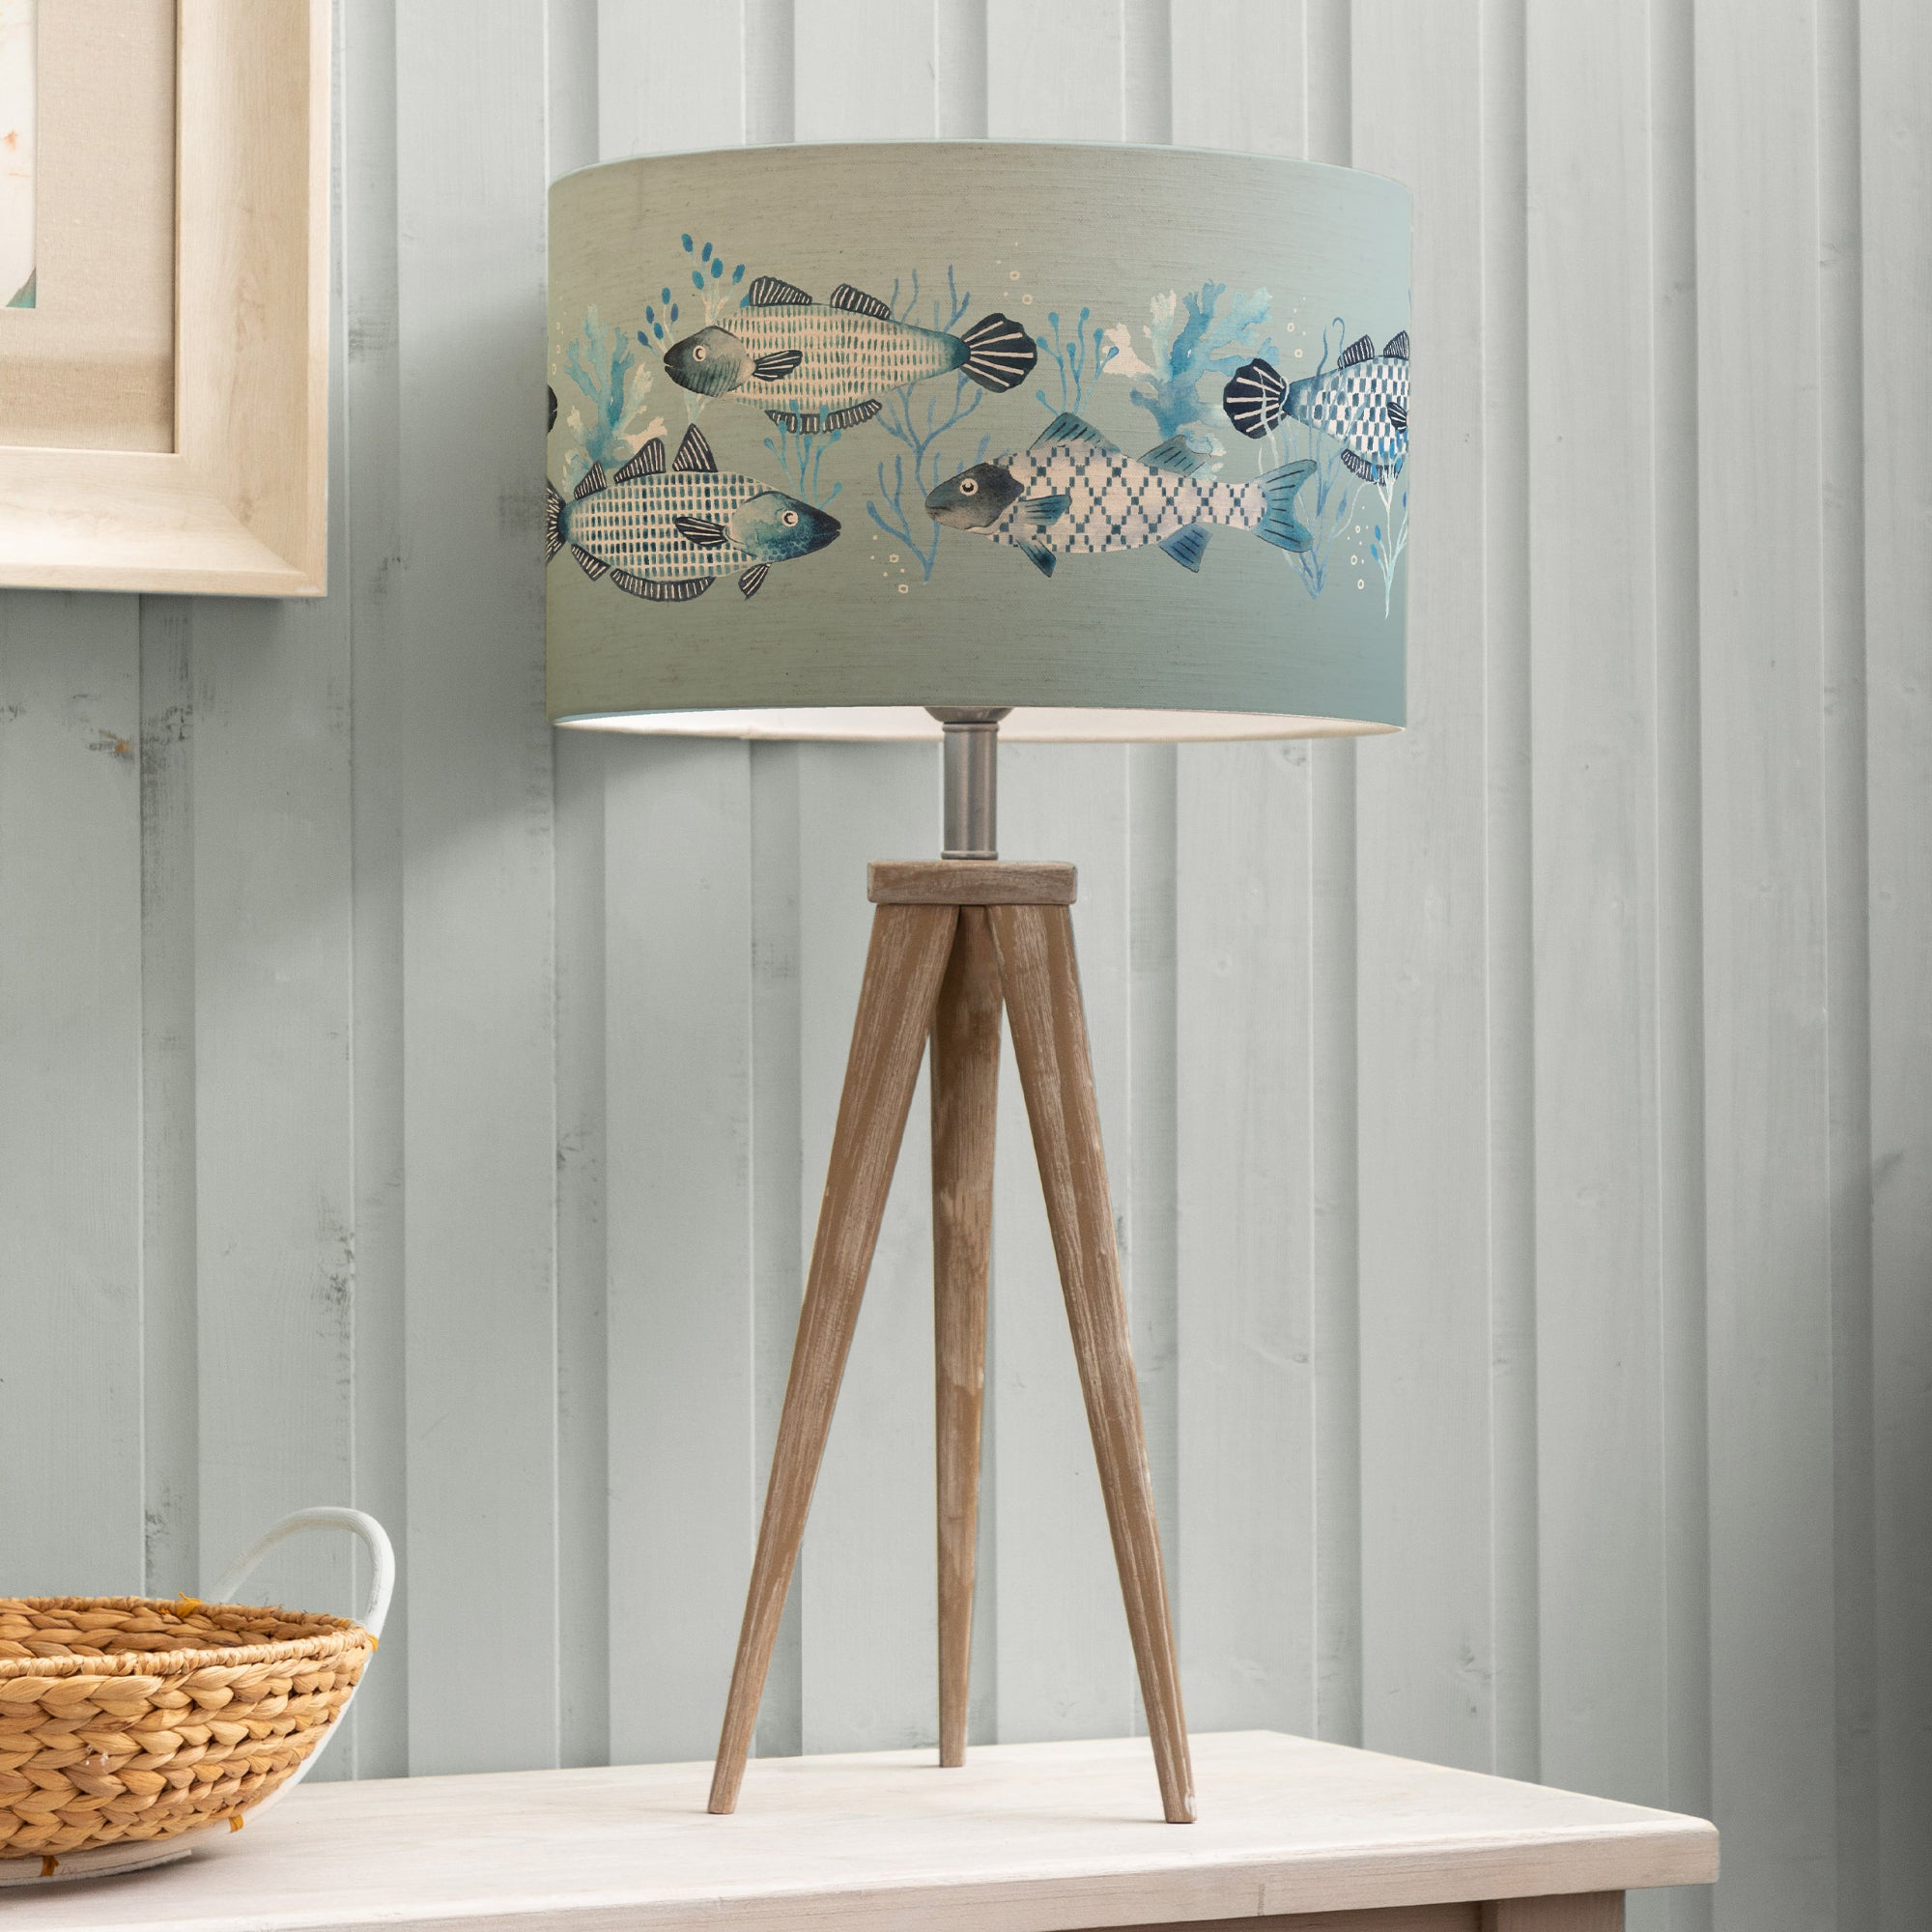 Aratus Tripod Table Lamp With Barbeau Shade Seafoam Blue